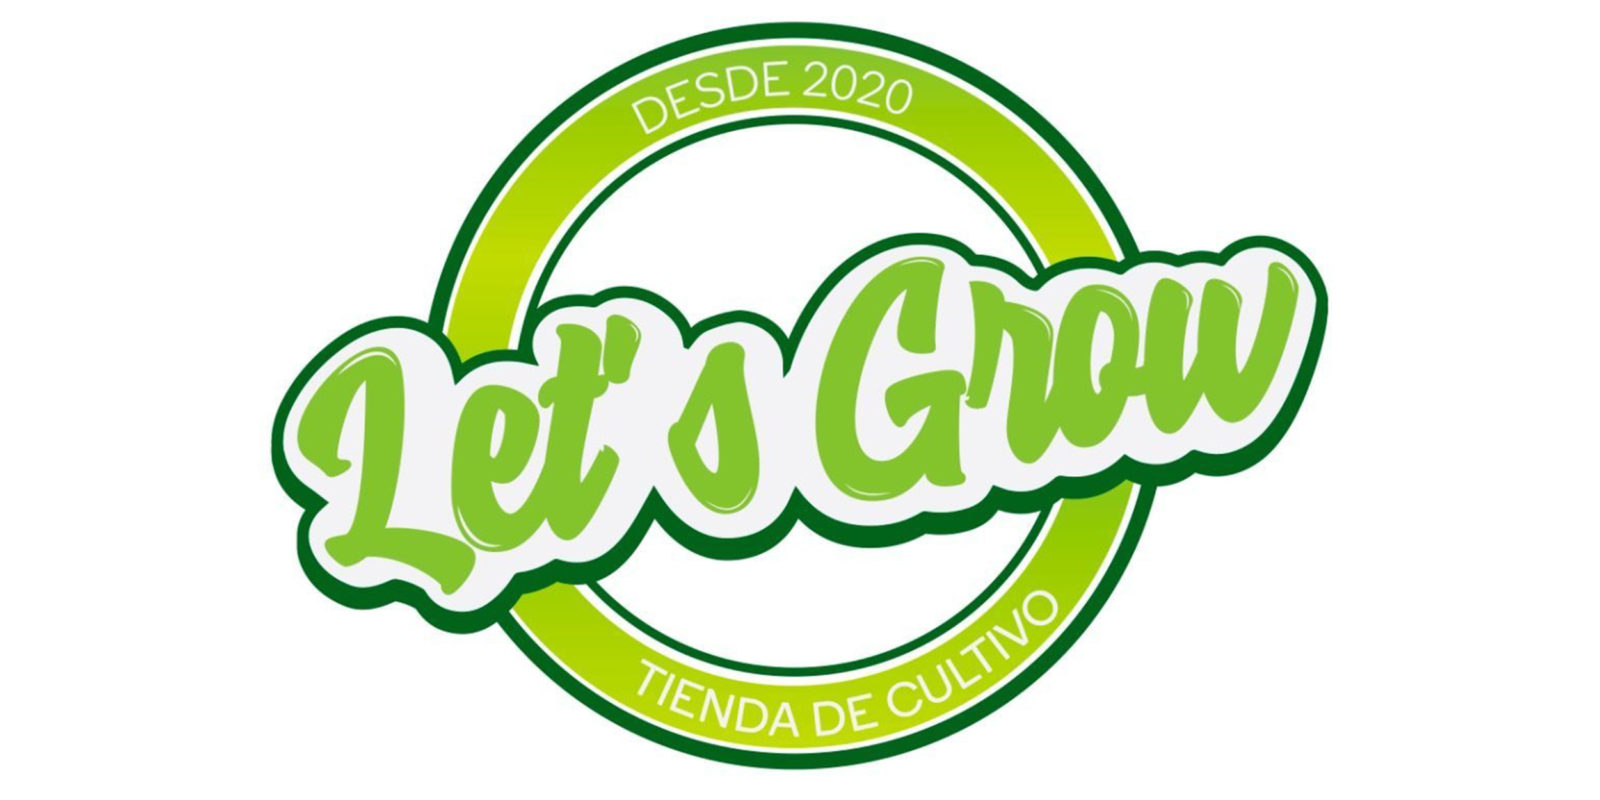 Let's Grow growshop berazategui hudson maritimo